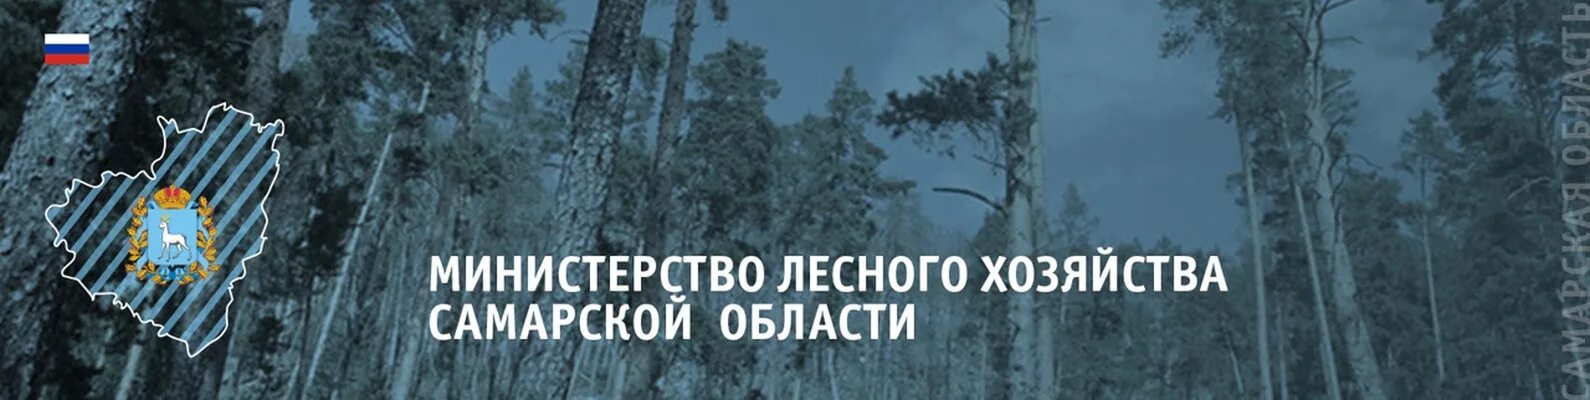 Министерство лесного хозяйства Самарской области. Самара Департамент лесного хозяйства. Министерство лесного хозяйства Самарской области герб.